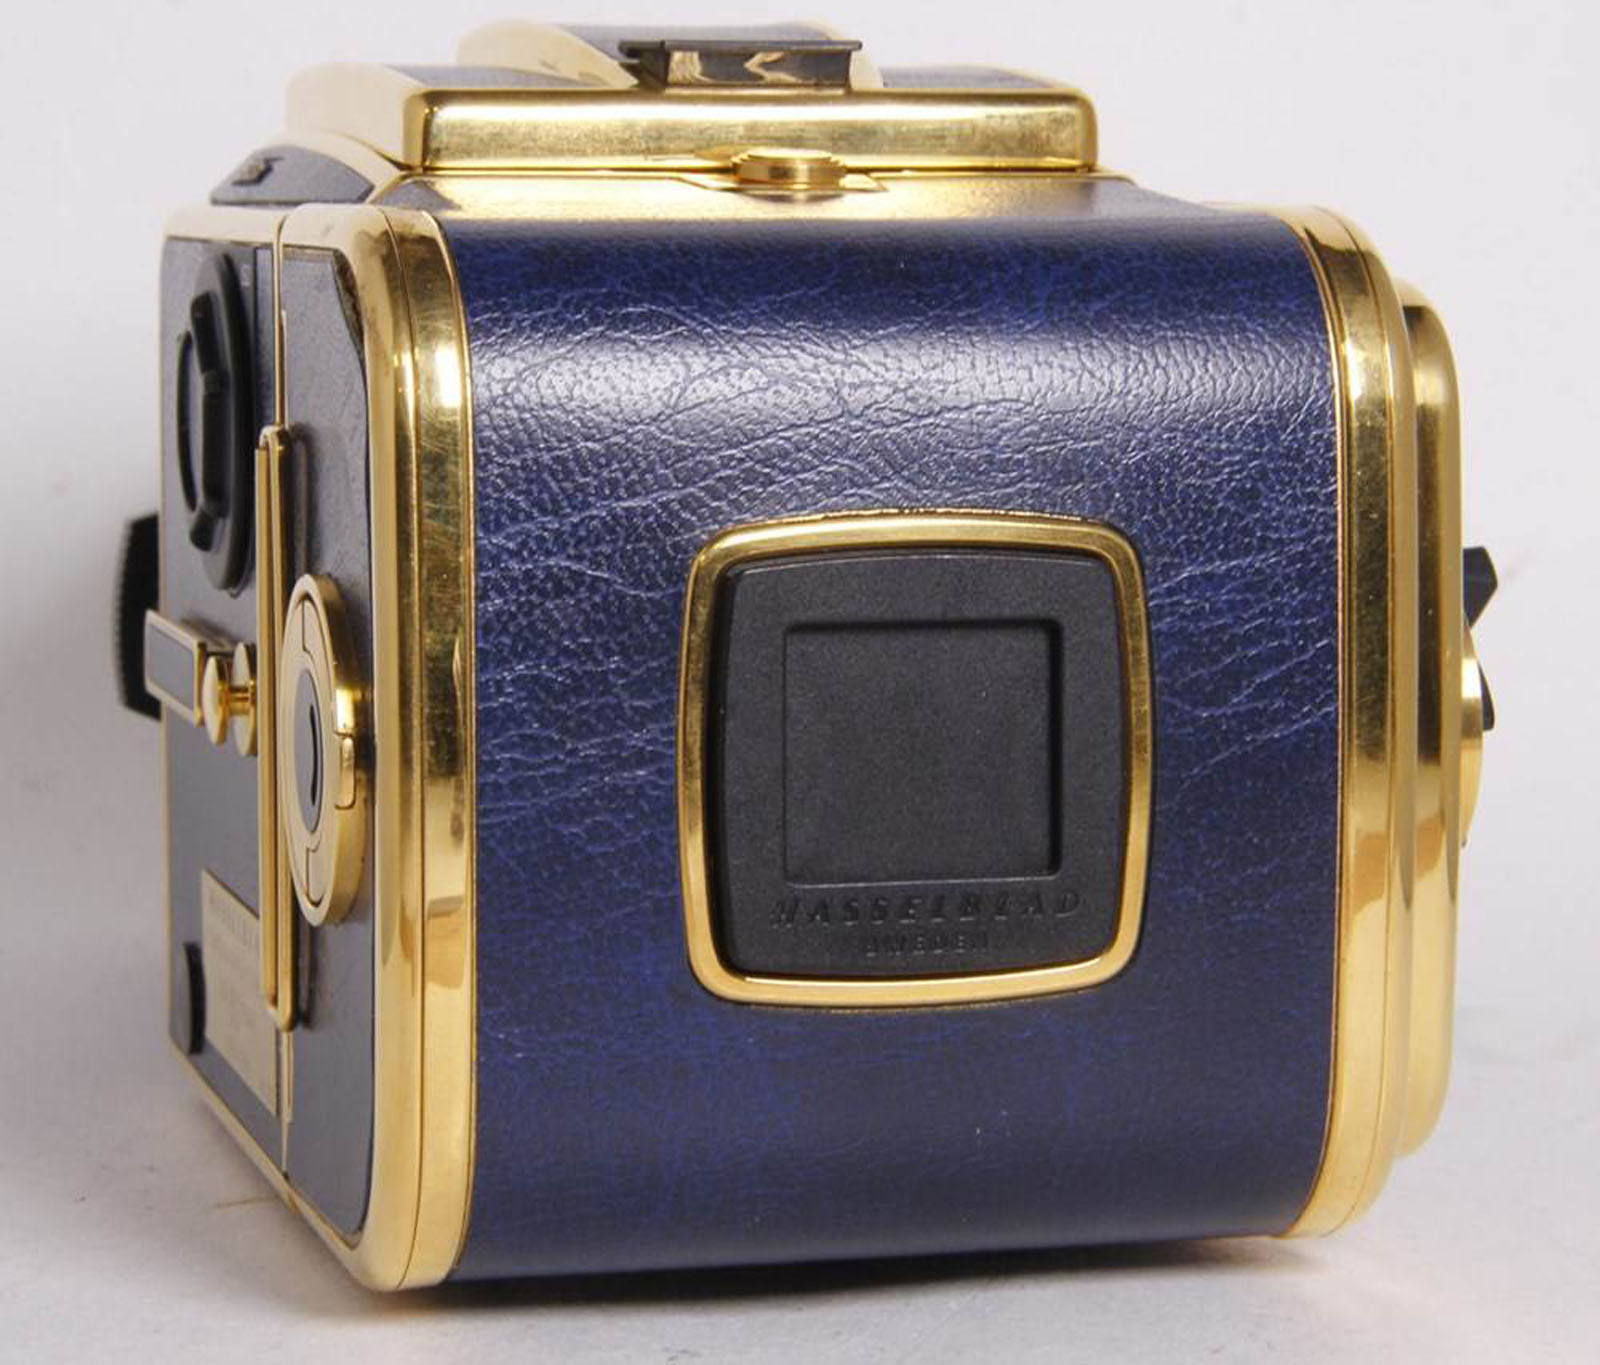 Hasselblad 503 CX Golden Blue Limited Edition camera, medium-format film camera 